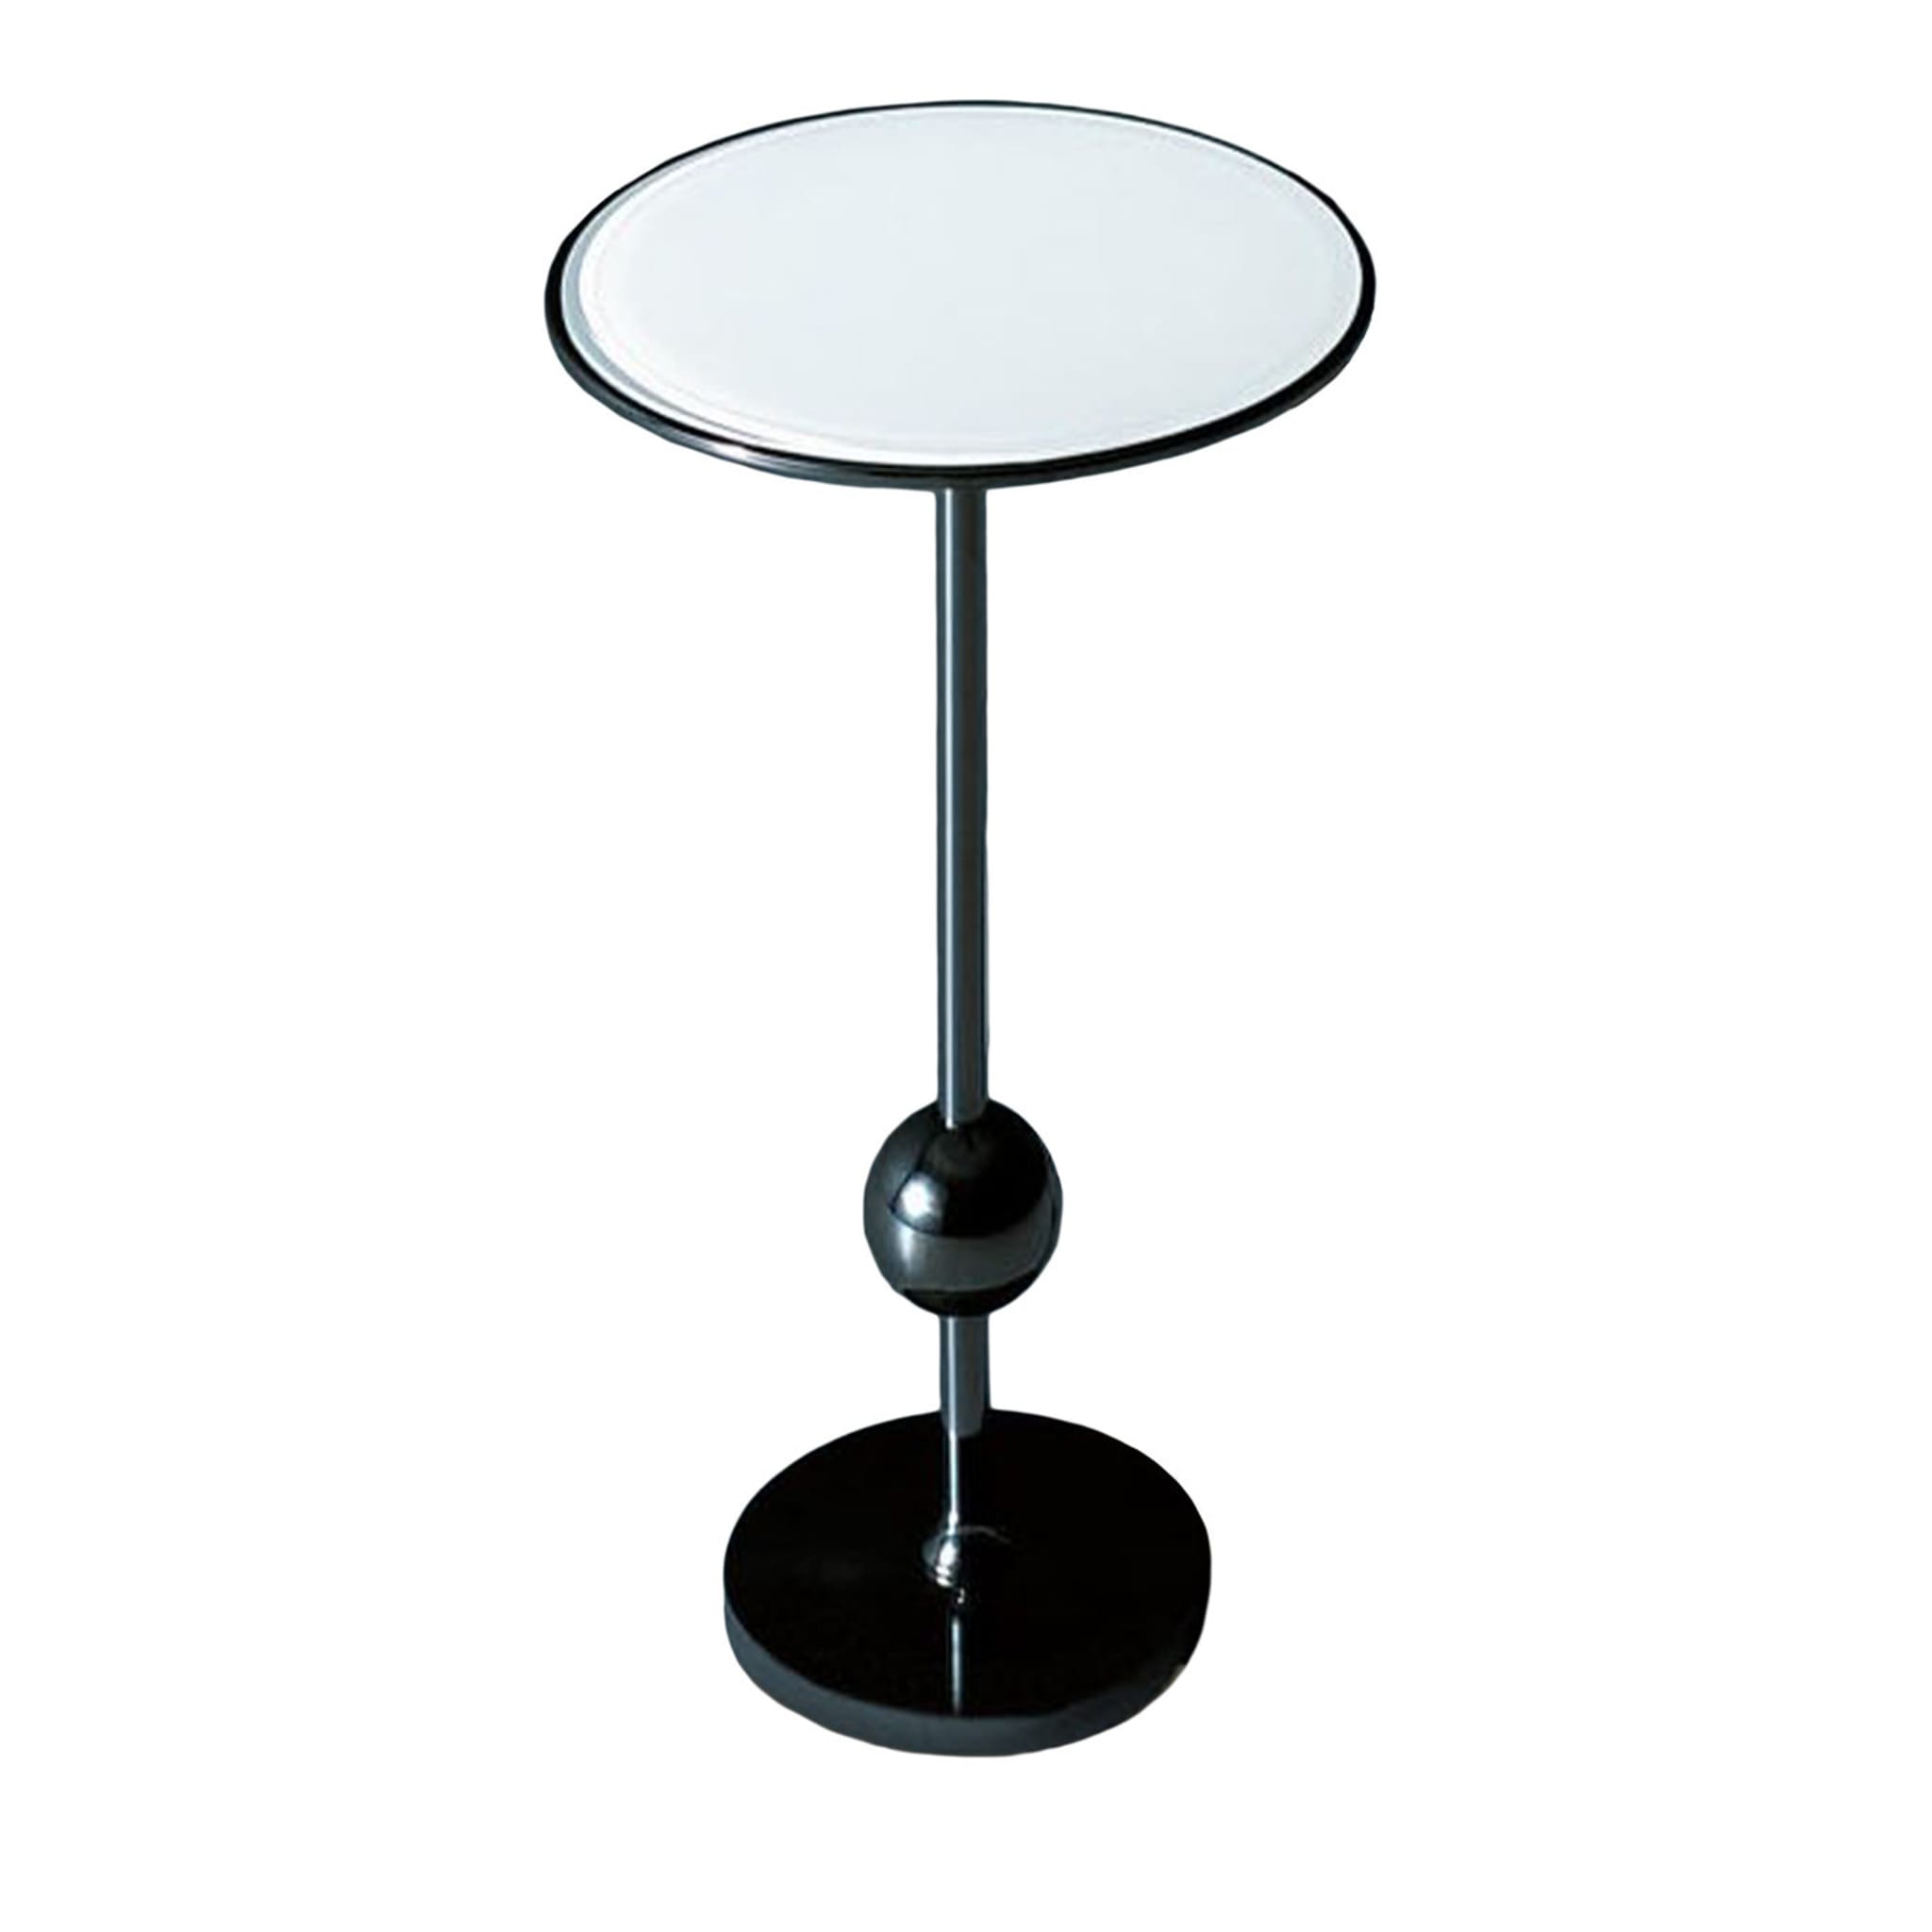 T1 White Side Table by Osvaldo Borsani - Main view